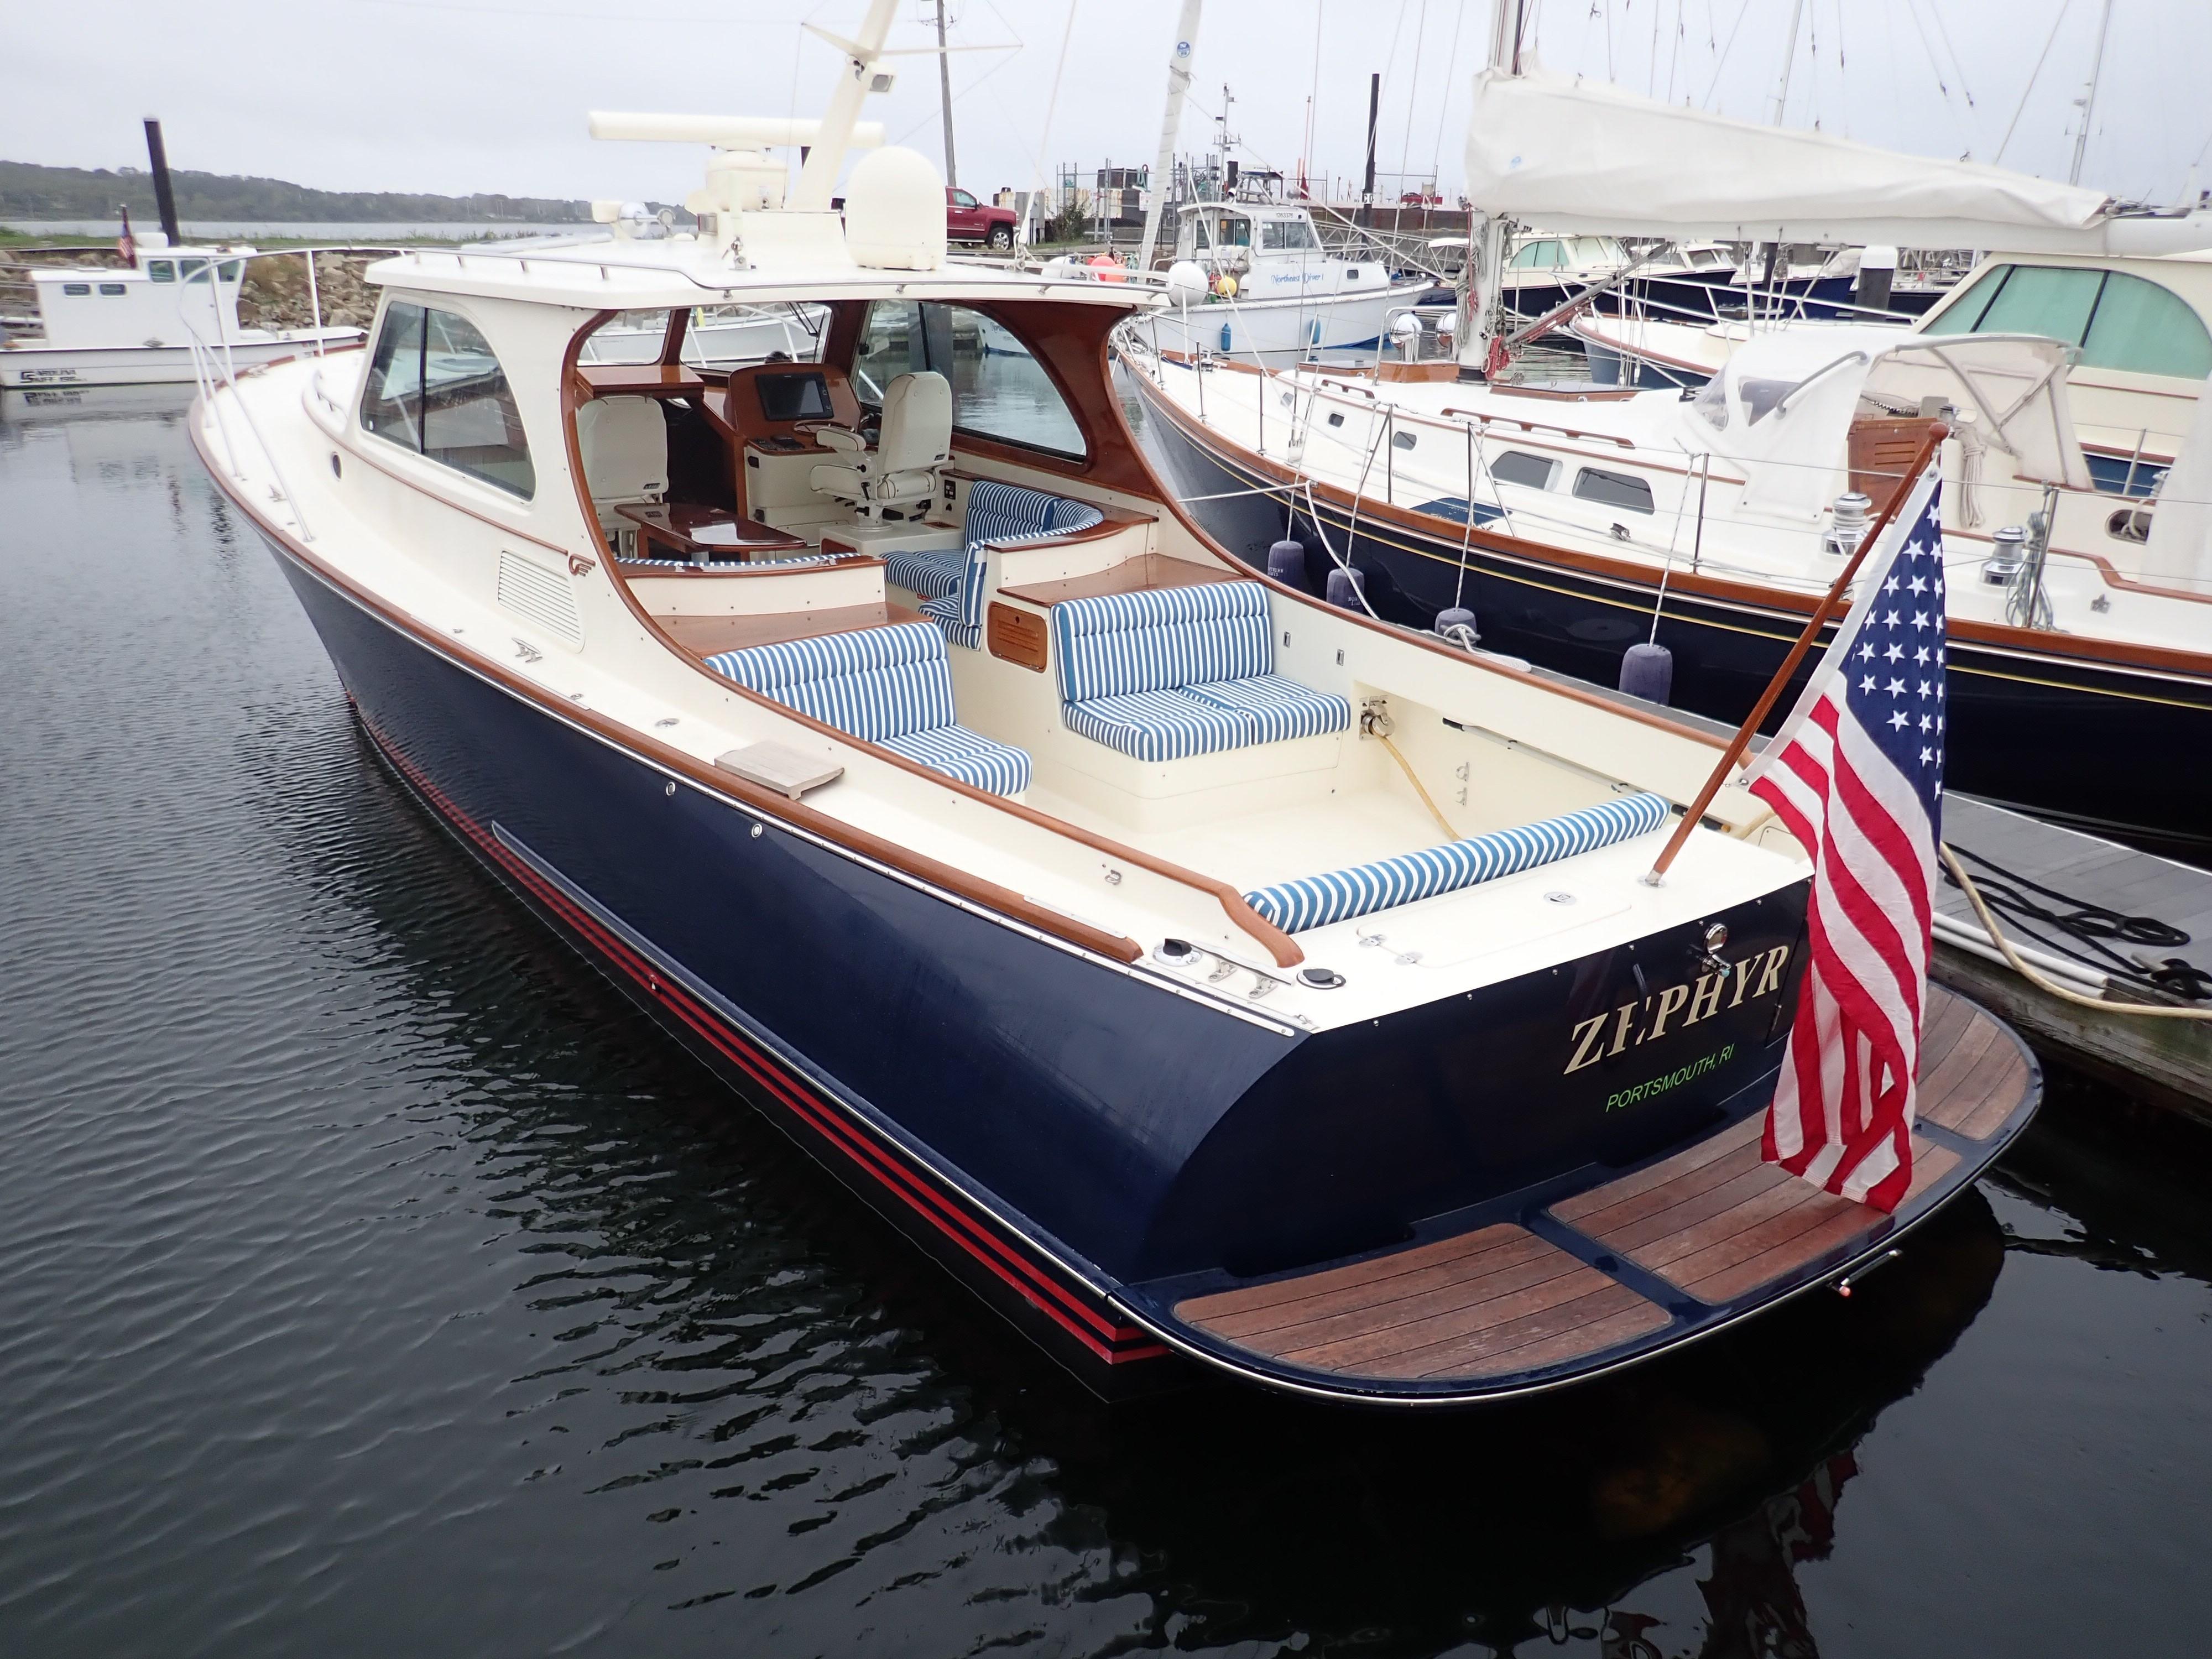 the royal yacht zephyr